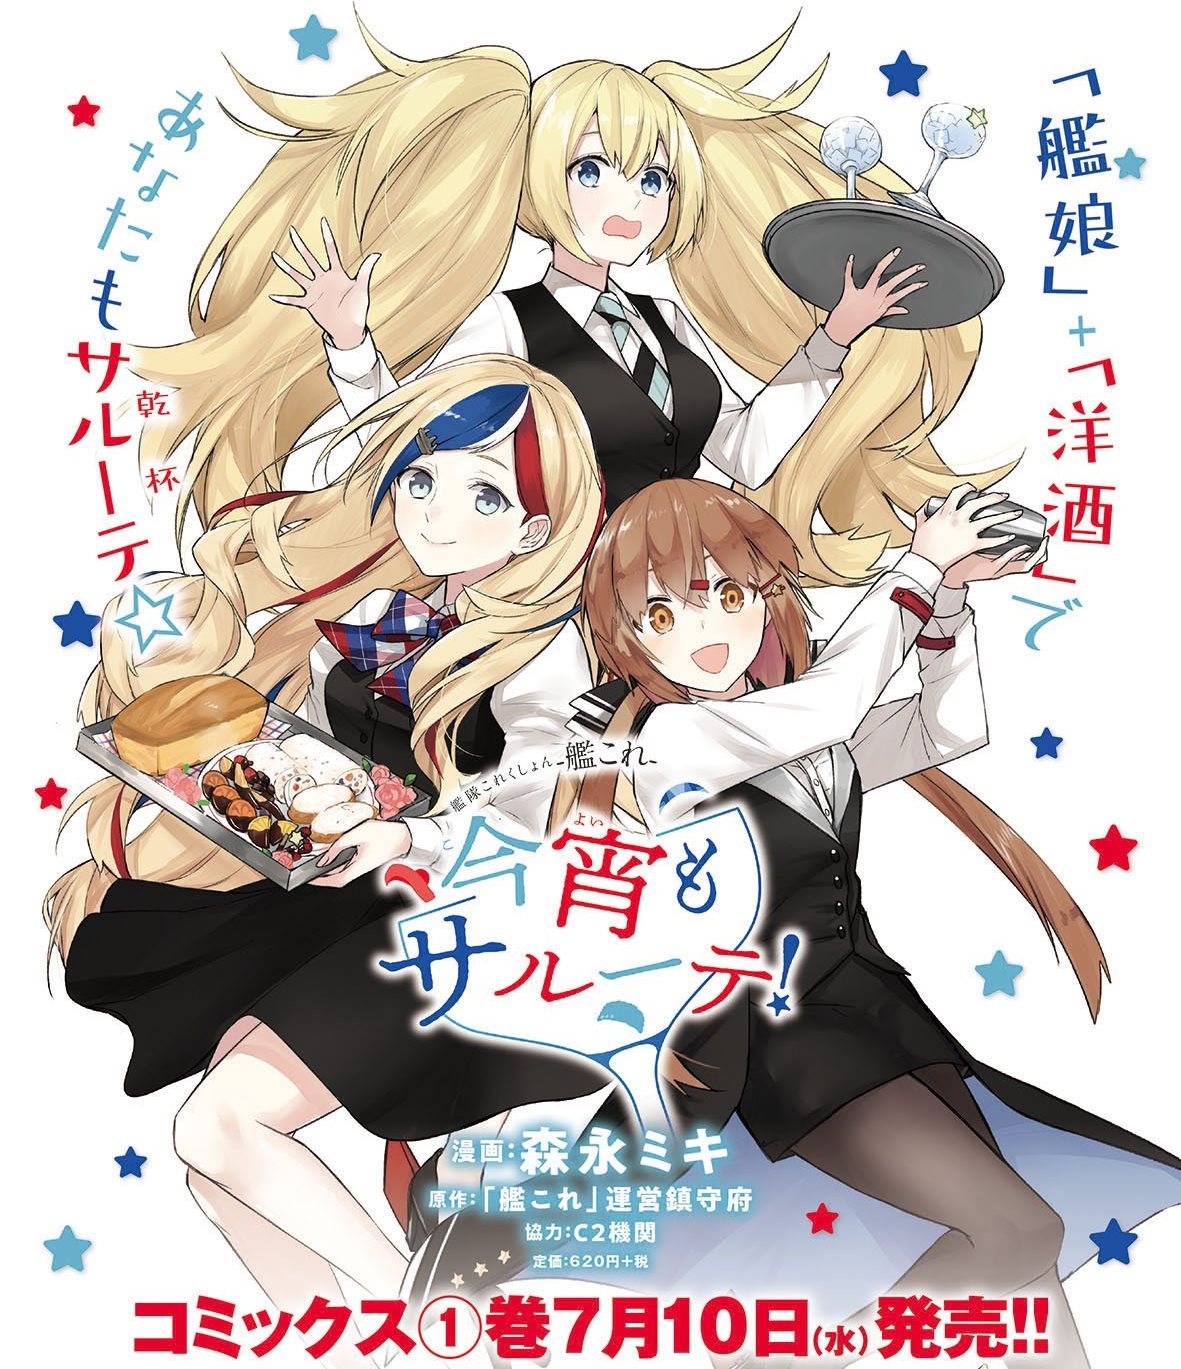 Manga Kantai Collection -KanColle- Koyoi Mo Salute! Ends